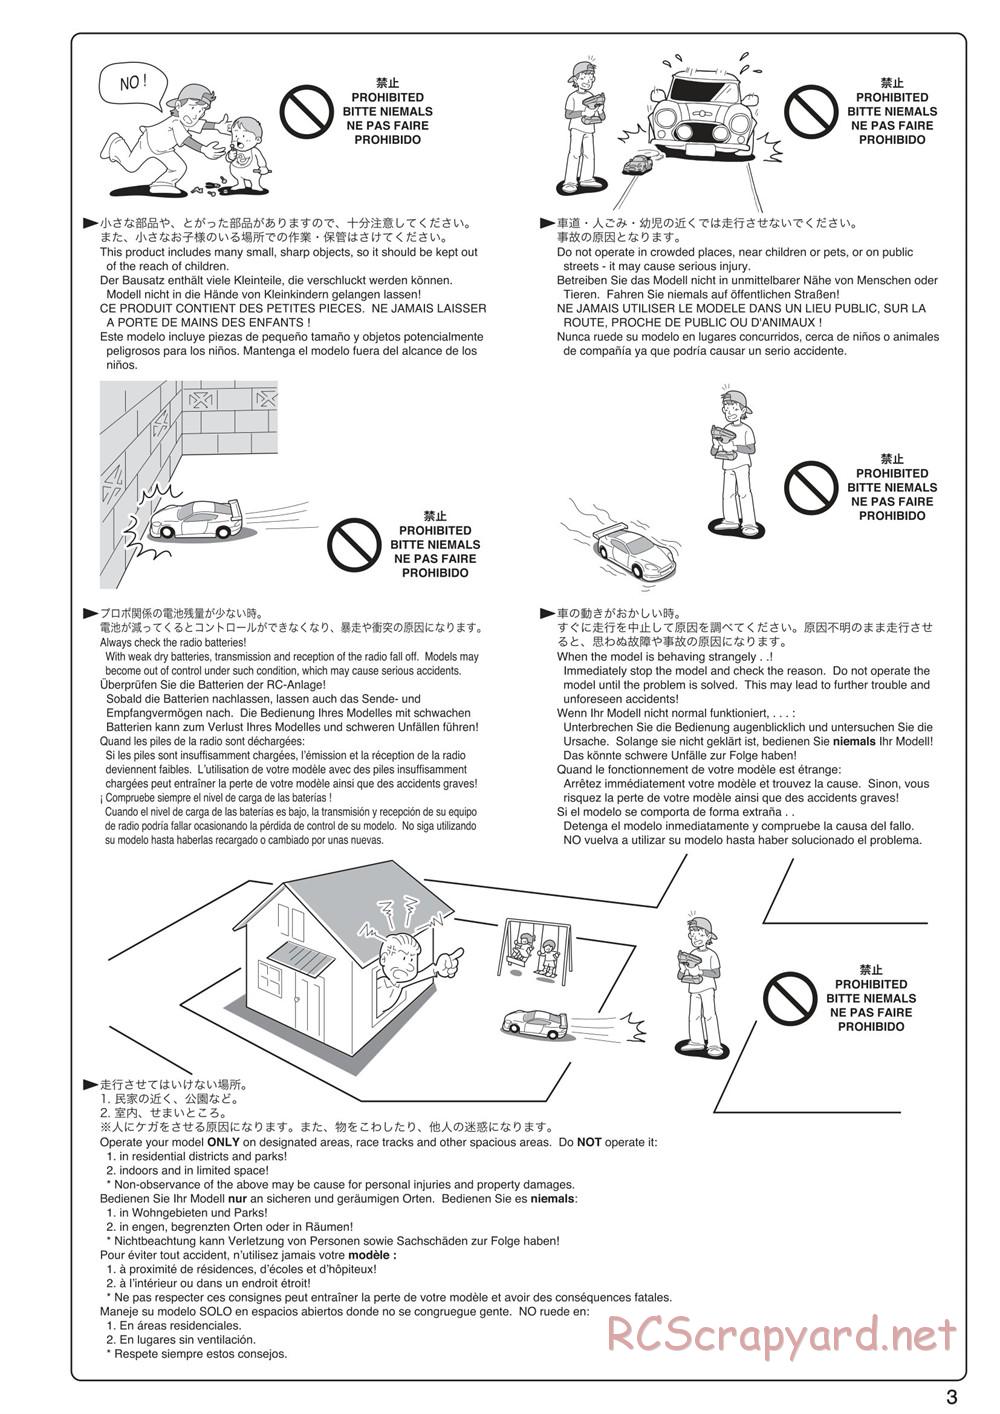 Kyosho - Scorpion XXL VE - Manual - Page 3